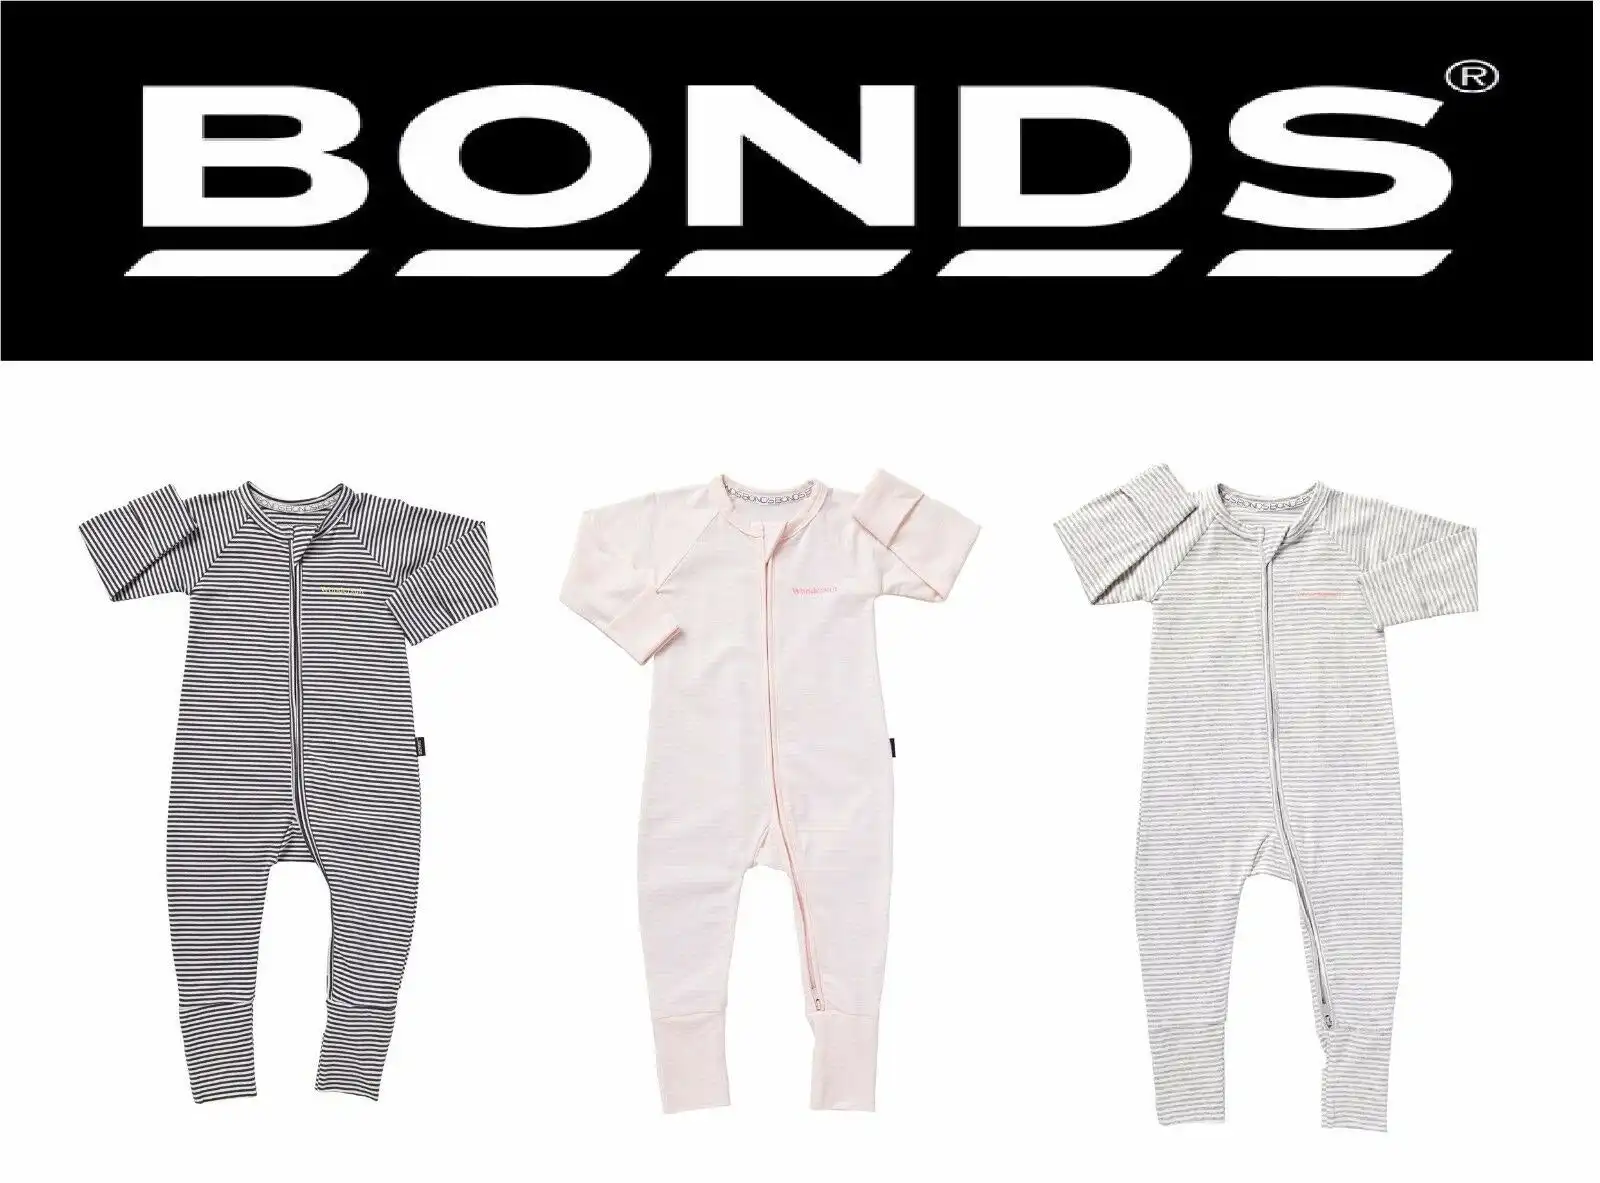 Bonds Baby Boy Girl Cotton Wondersuit Zip Jumpsuit Pink Blue 0000 000 00 0 1 2 3